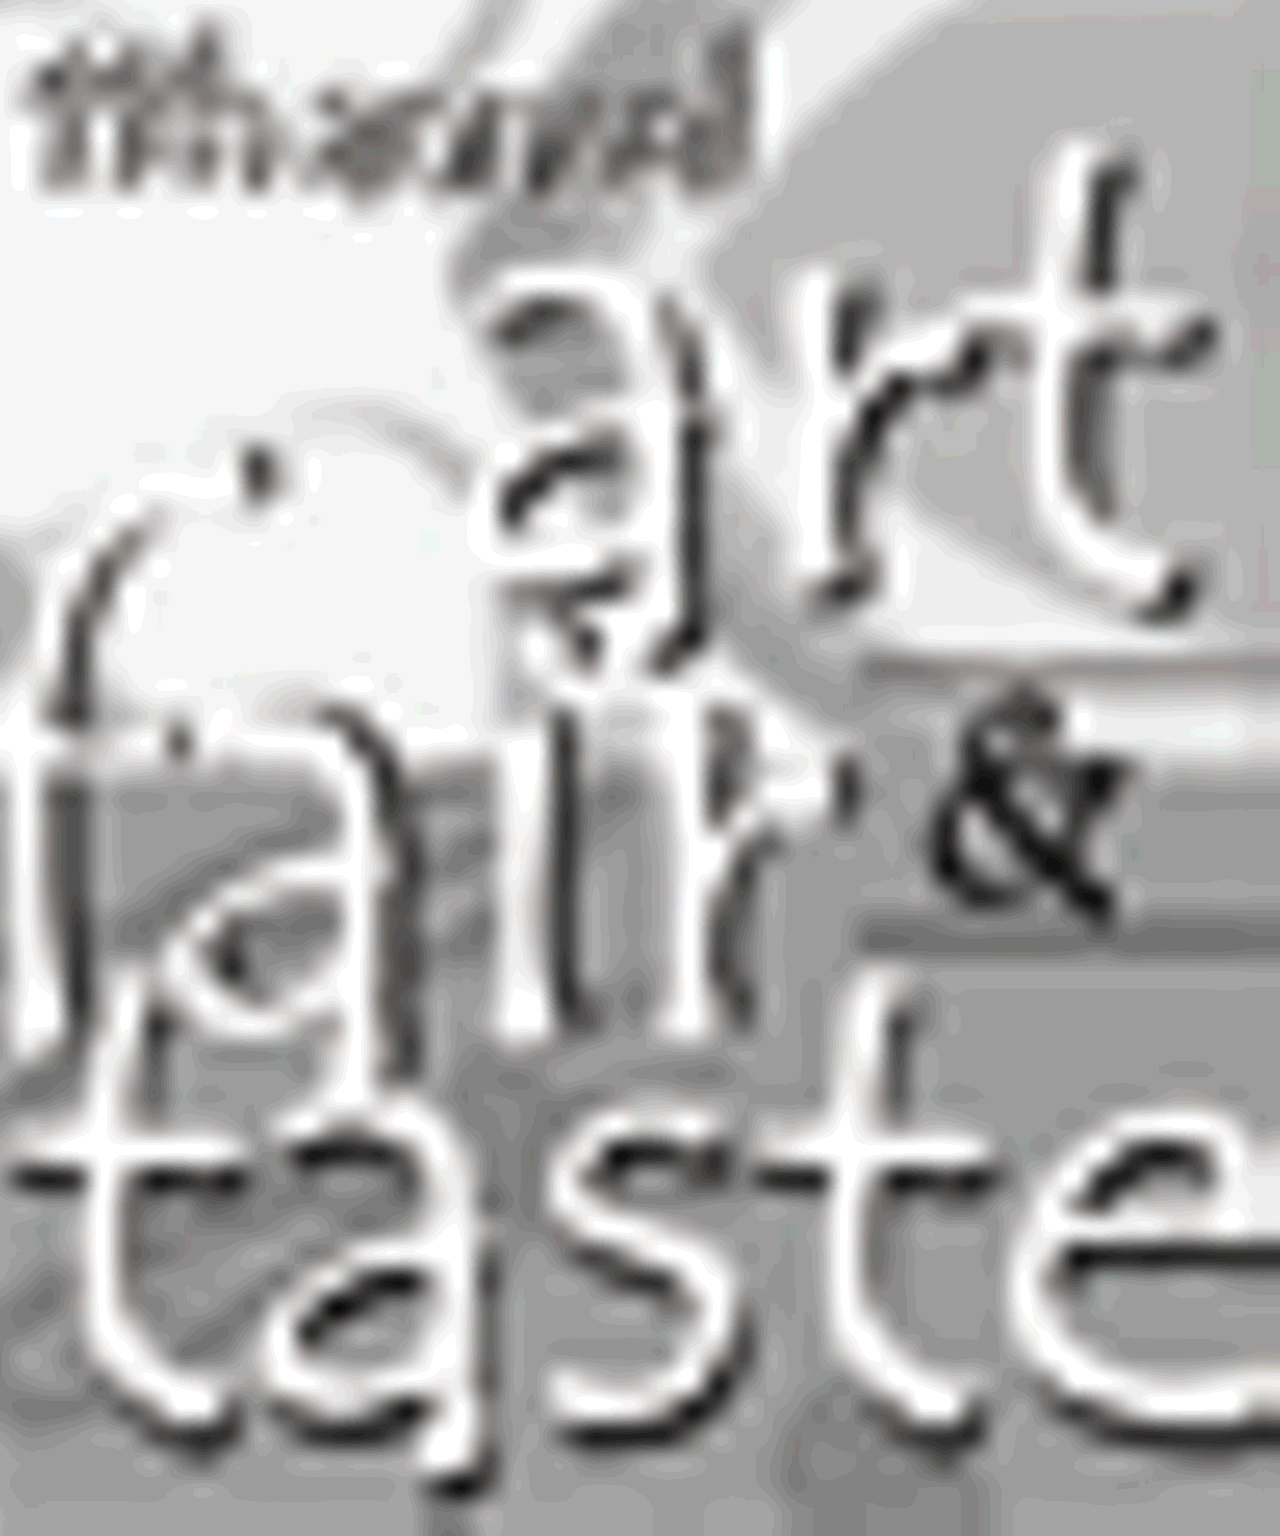 Central West End Art Fair and Taste